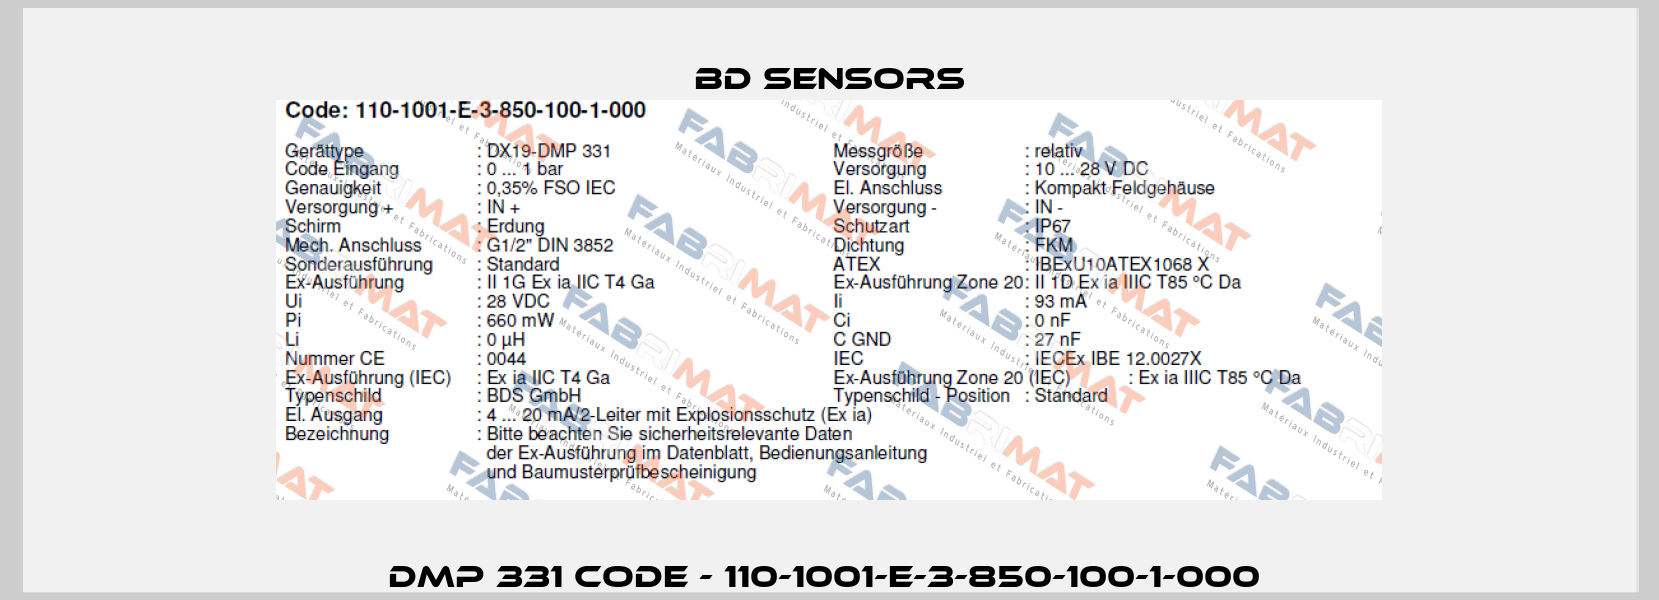 DMP 331 Code - 110-1001-E-3-850-100-1-000  Bd Sensors